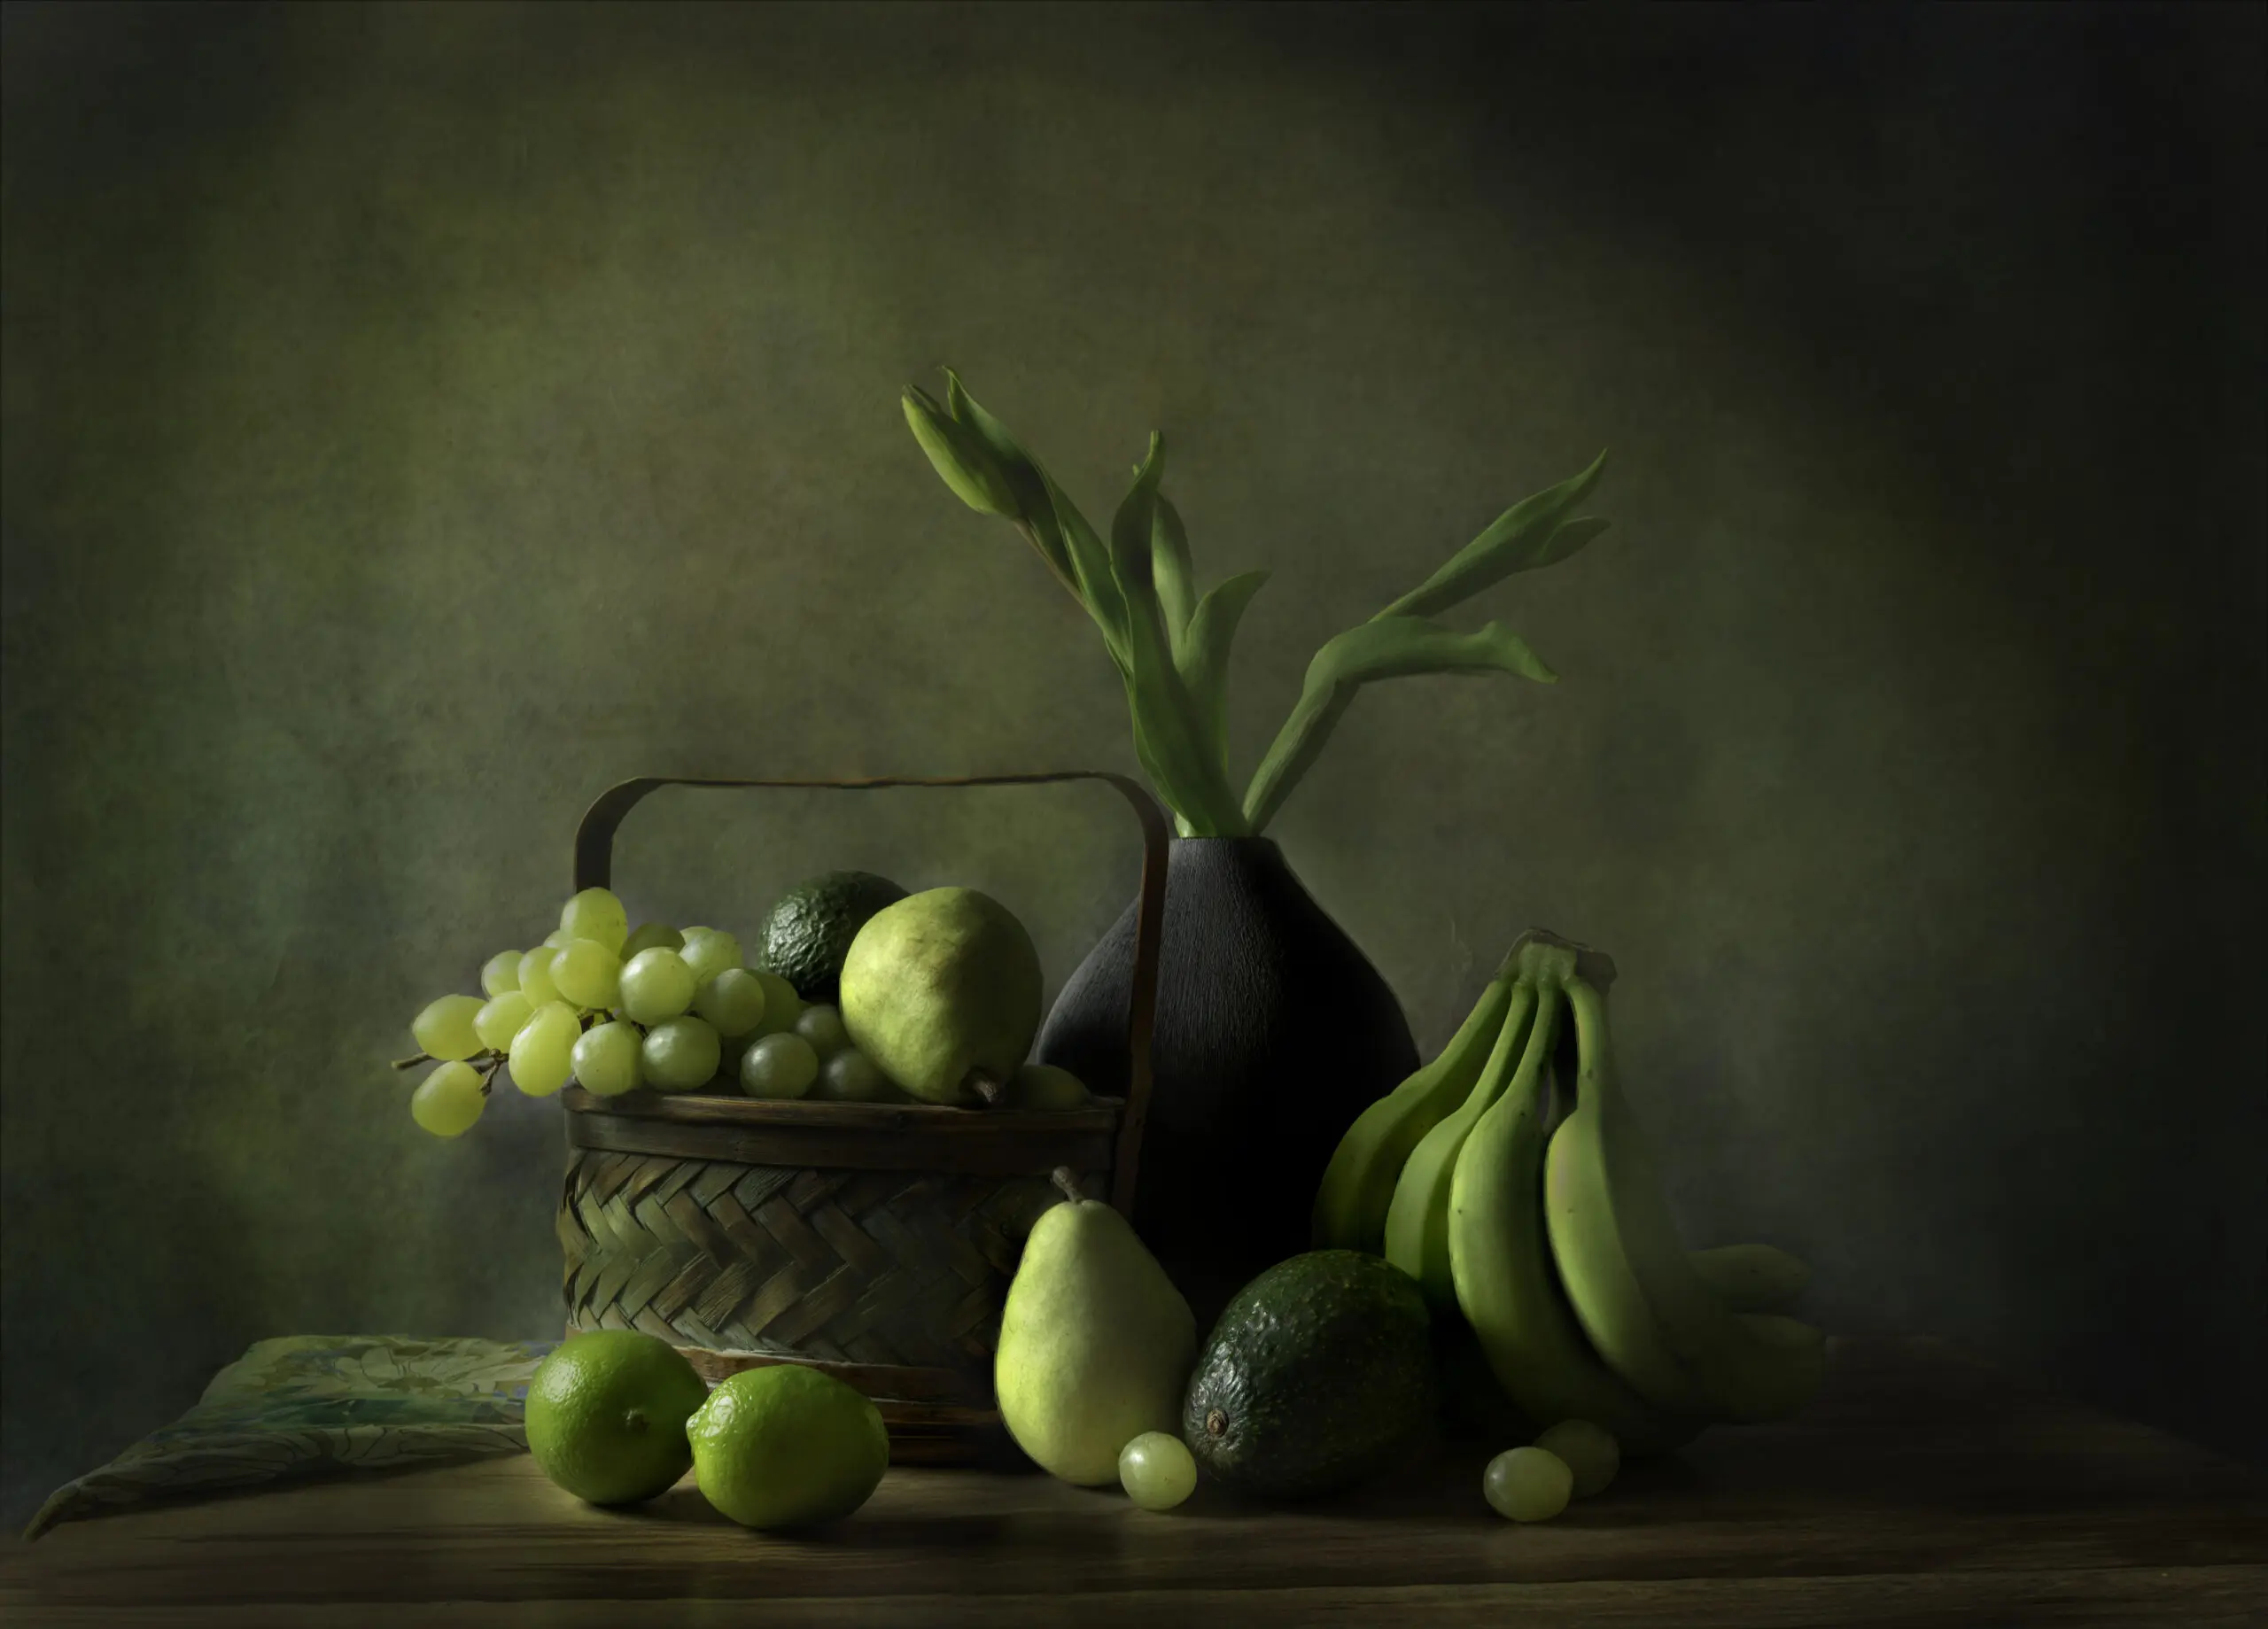 Wandbild (25558) Green Mood by Rong Wei präsentiert: Stillleben